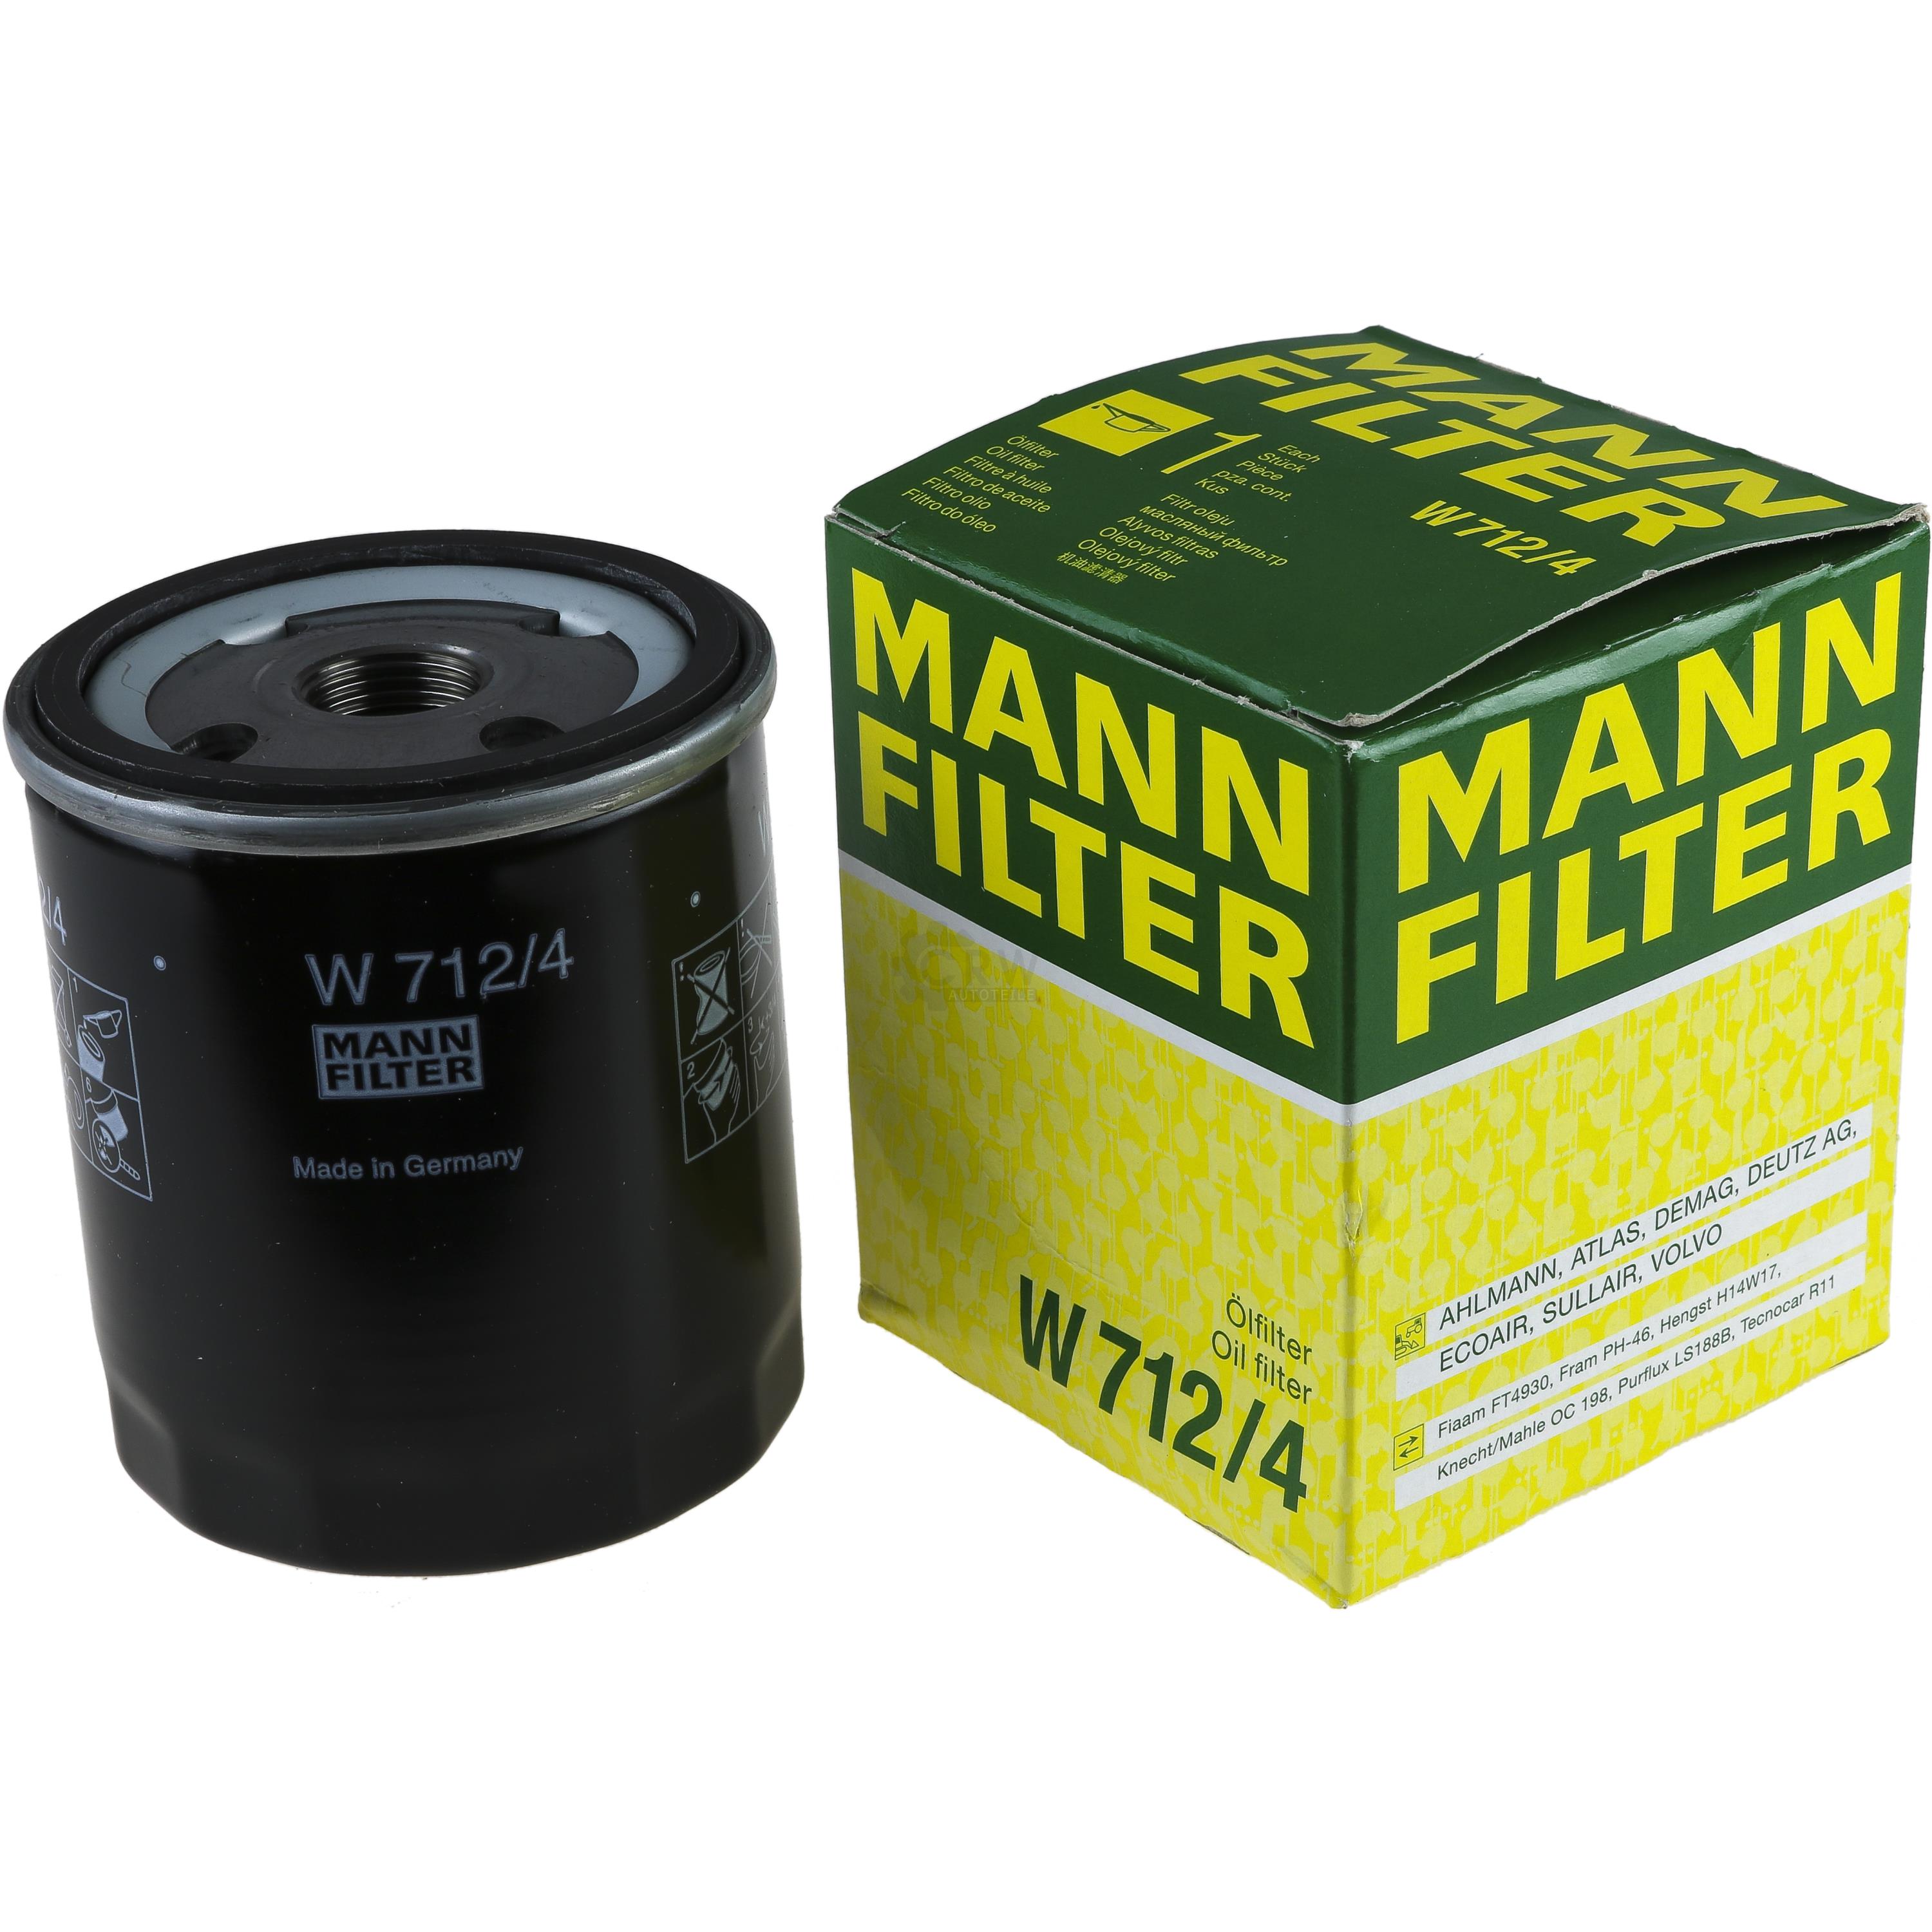 MANN-FILTER ÖlFILTER für Arbeitshydraulik W 712/4